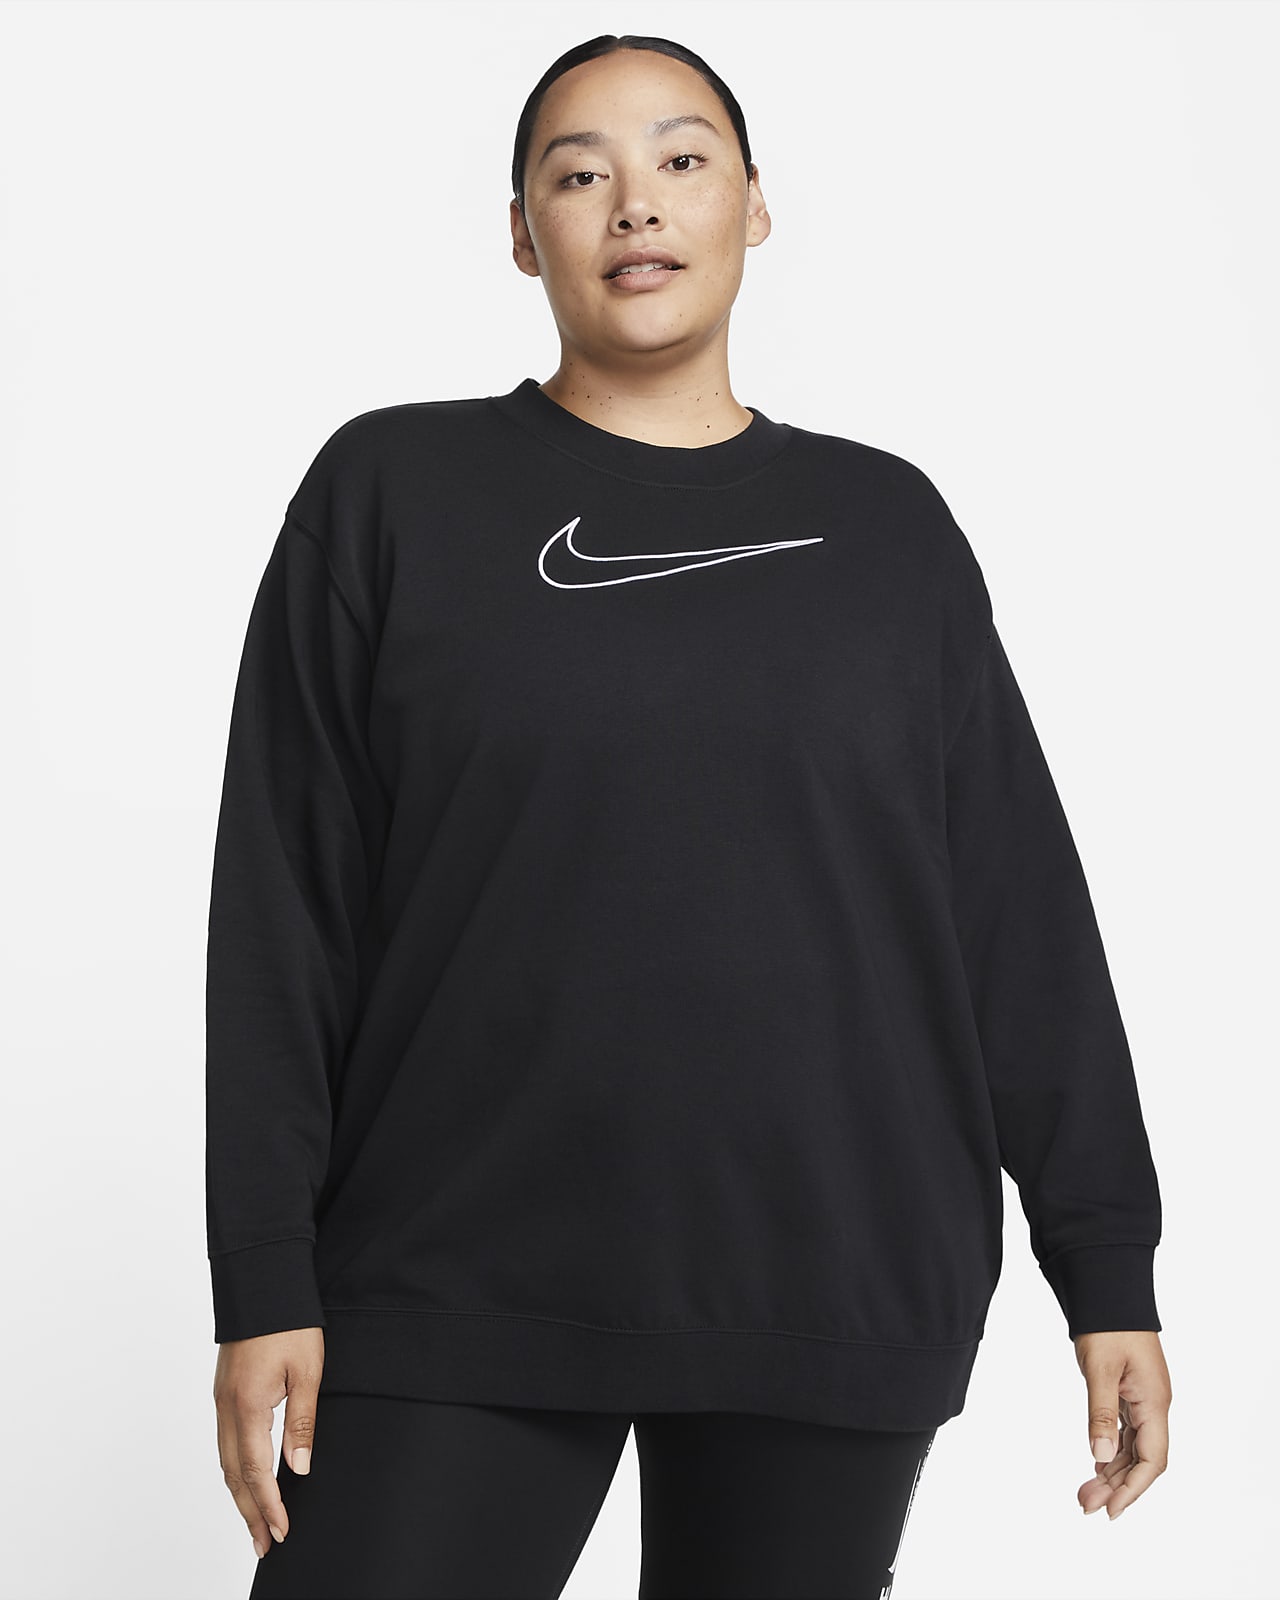 Nike Dri-FIT Get Fit Rundhals-Sweatshirt mit Grafik für Damen (große Größe)